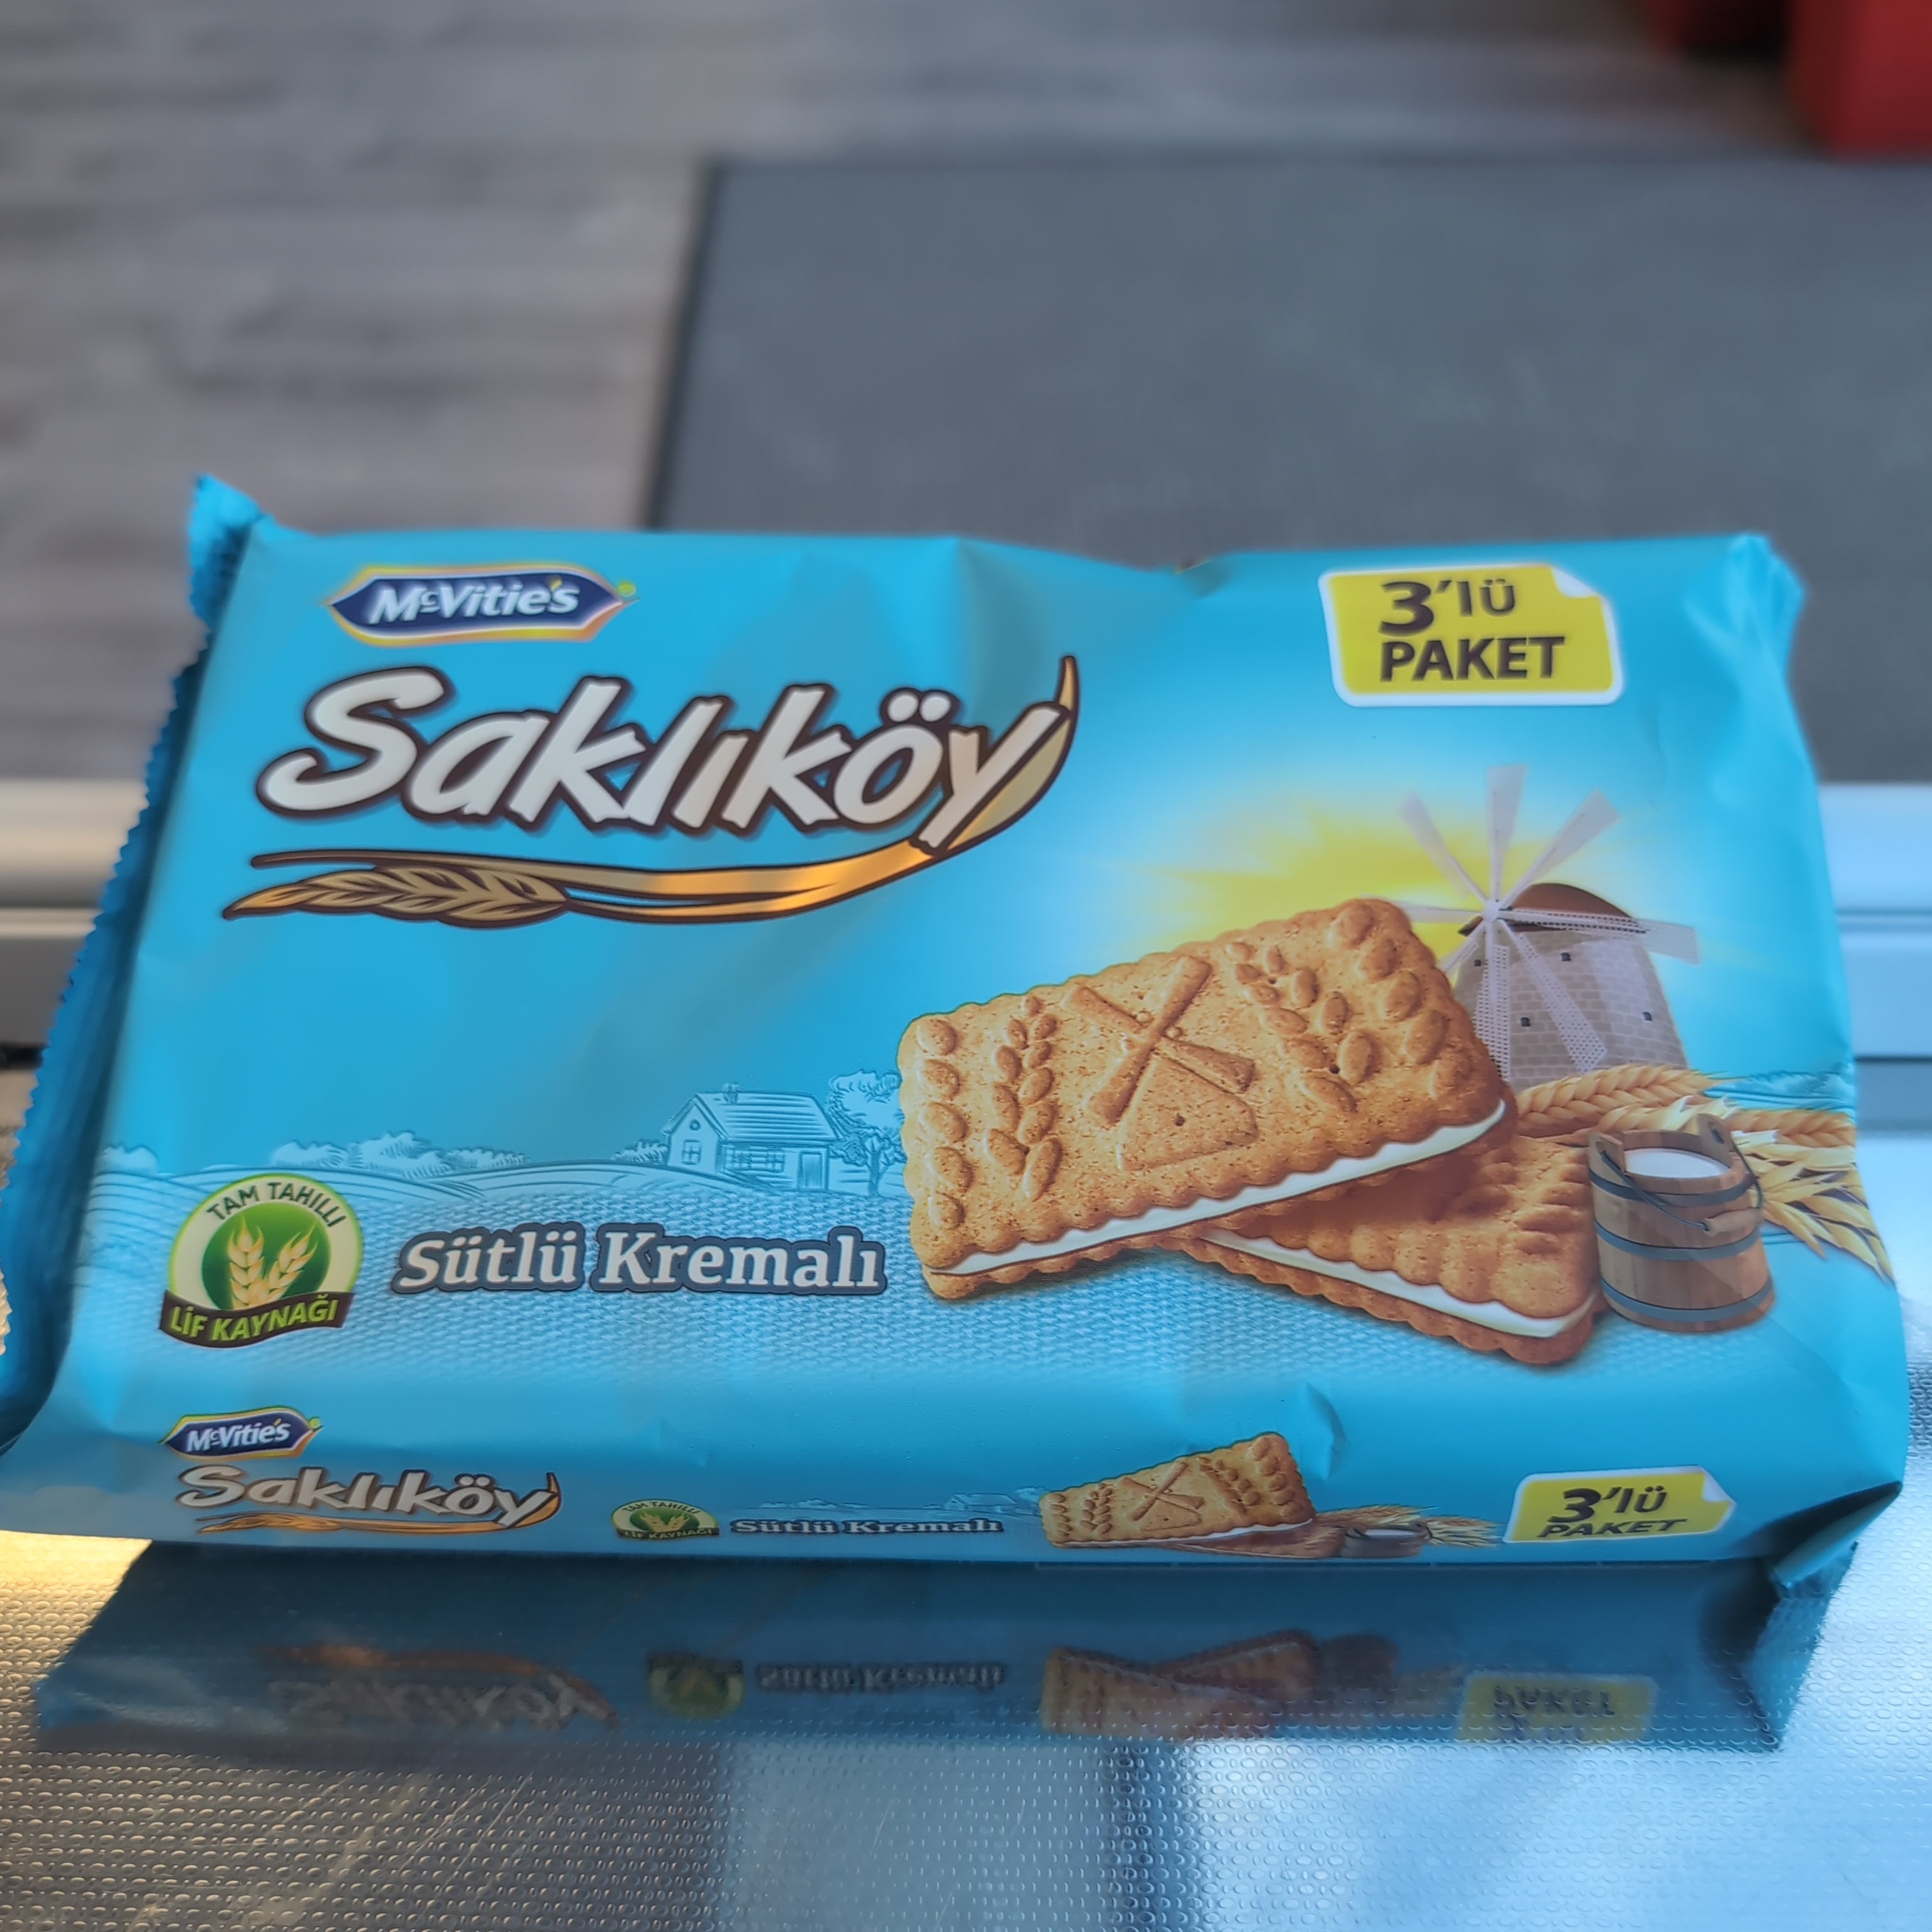 ULKER SAKLIKOY Sutlu KREMALI Biscuits with Milk Cream pack of 3 264g